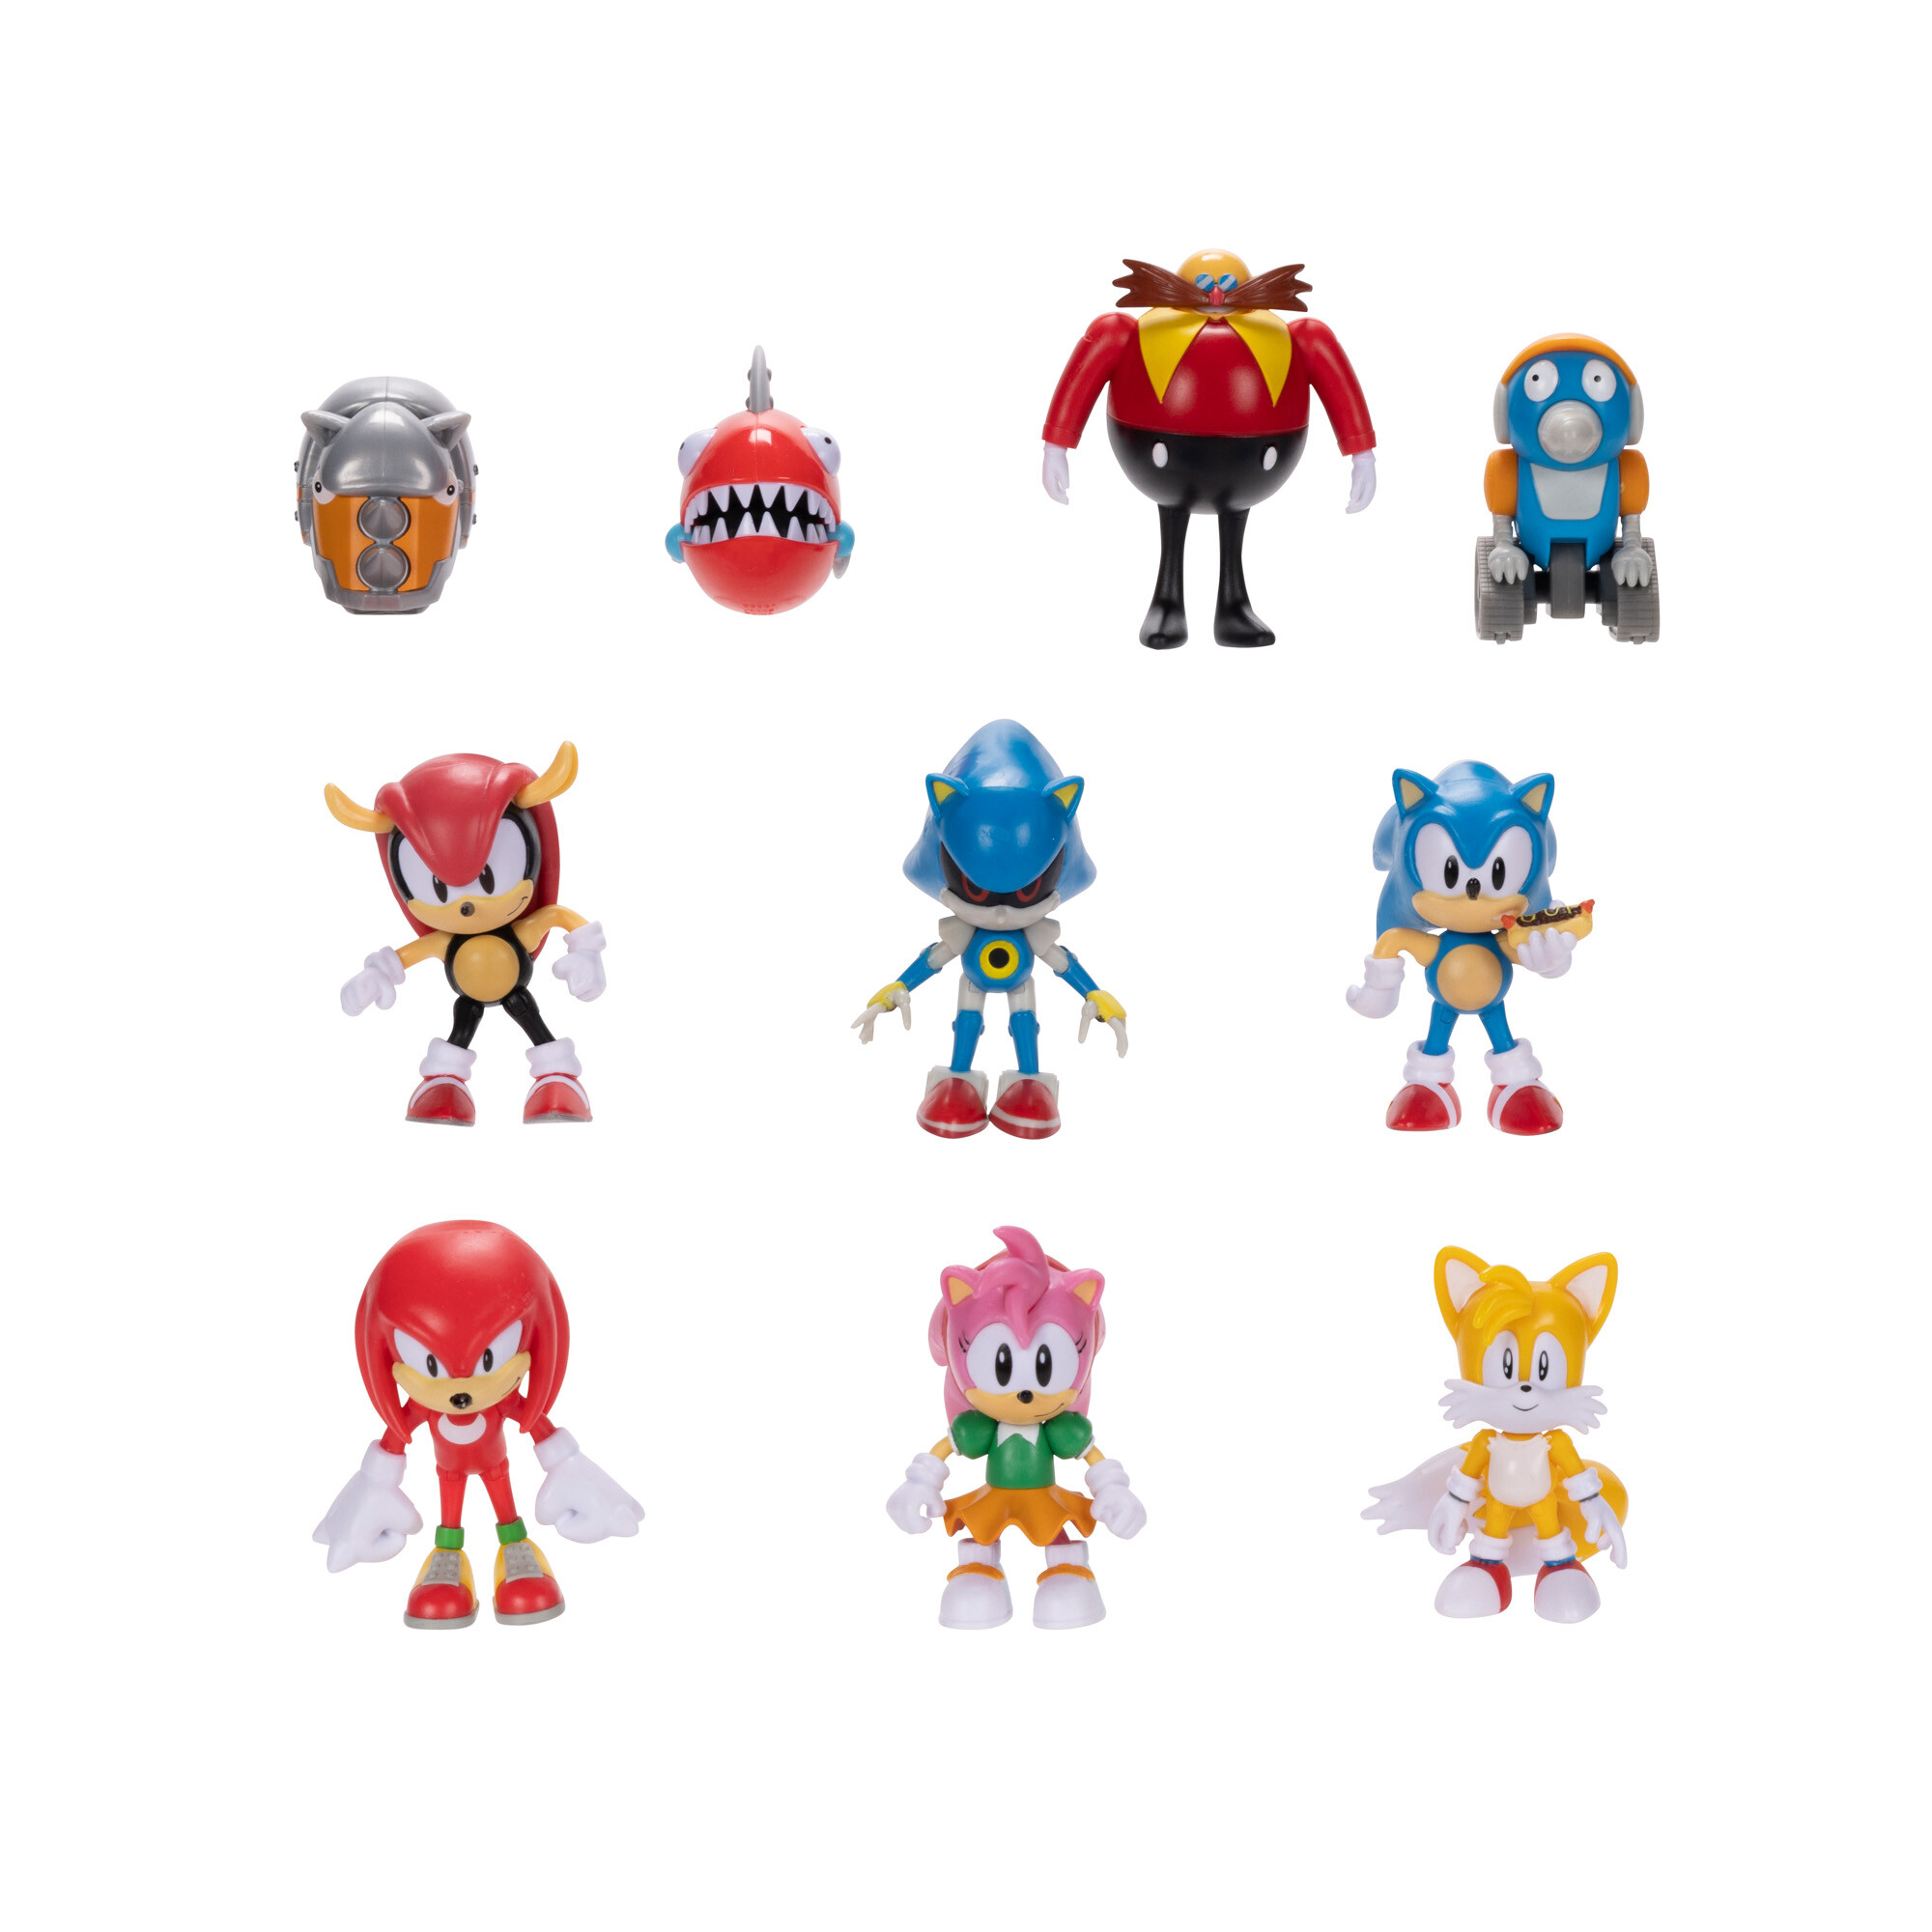 Sonic classic pack da 10 personaggi articolati estremamente